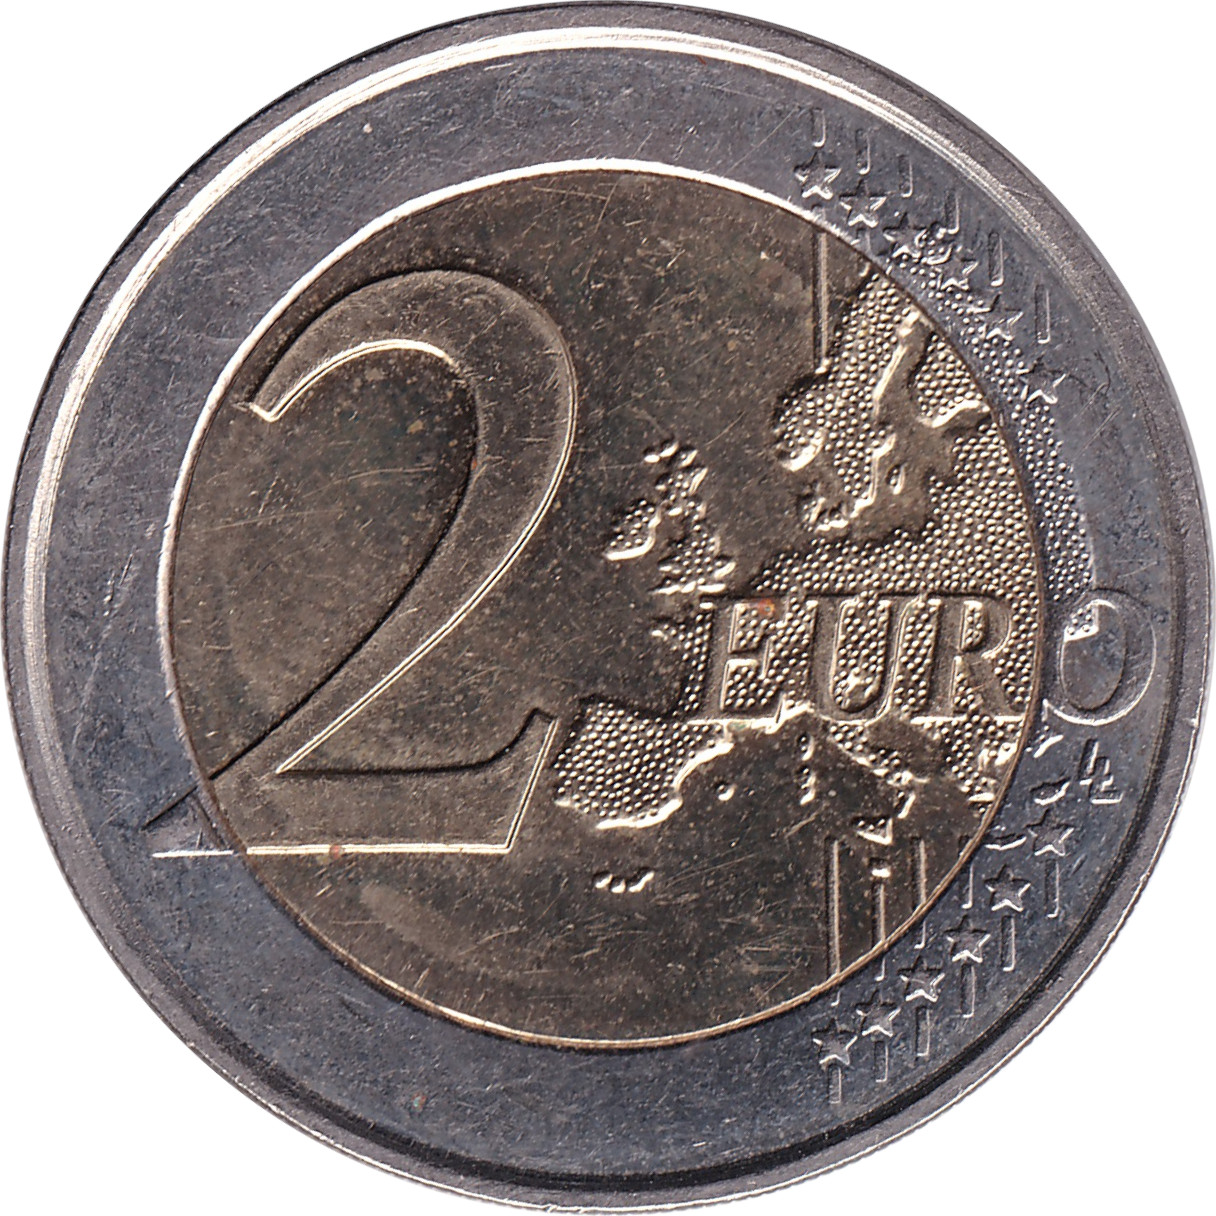 2 euro - Traité de l'Elysée